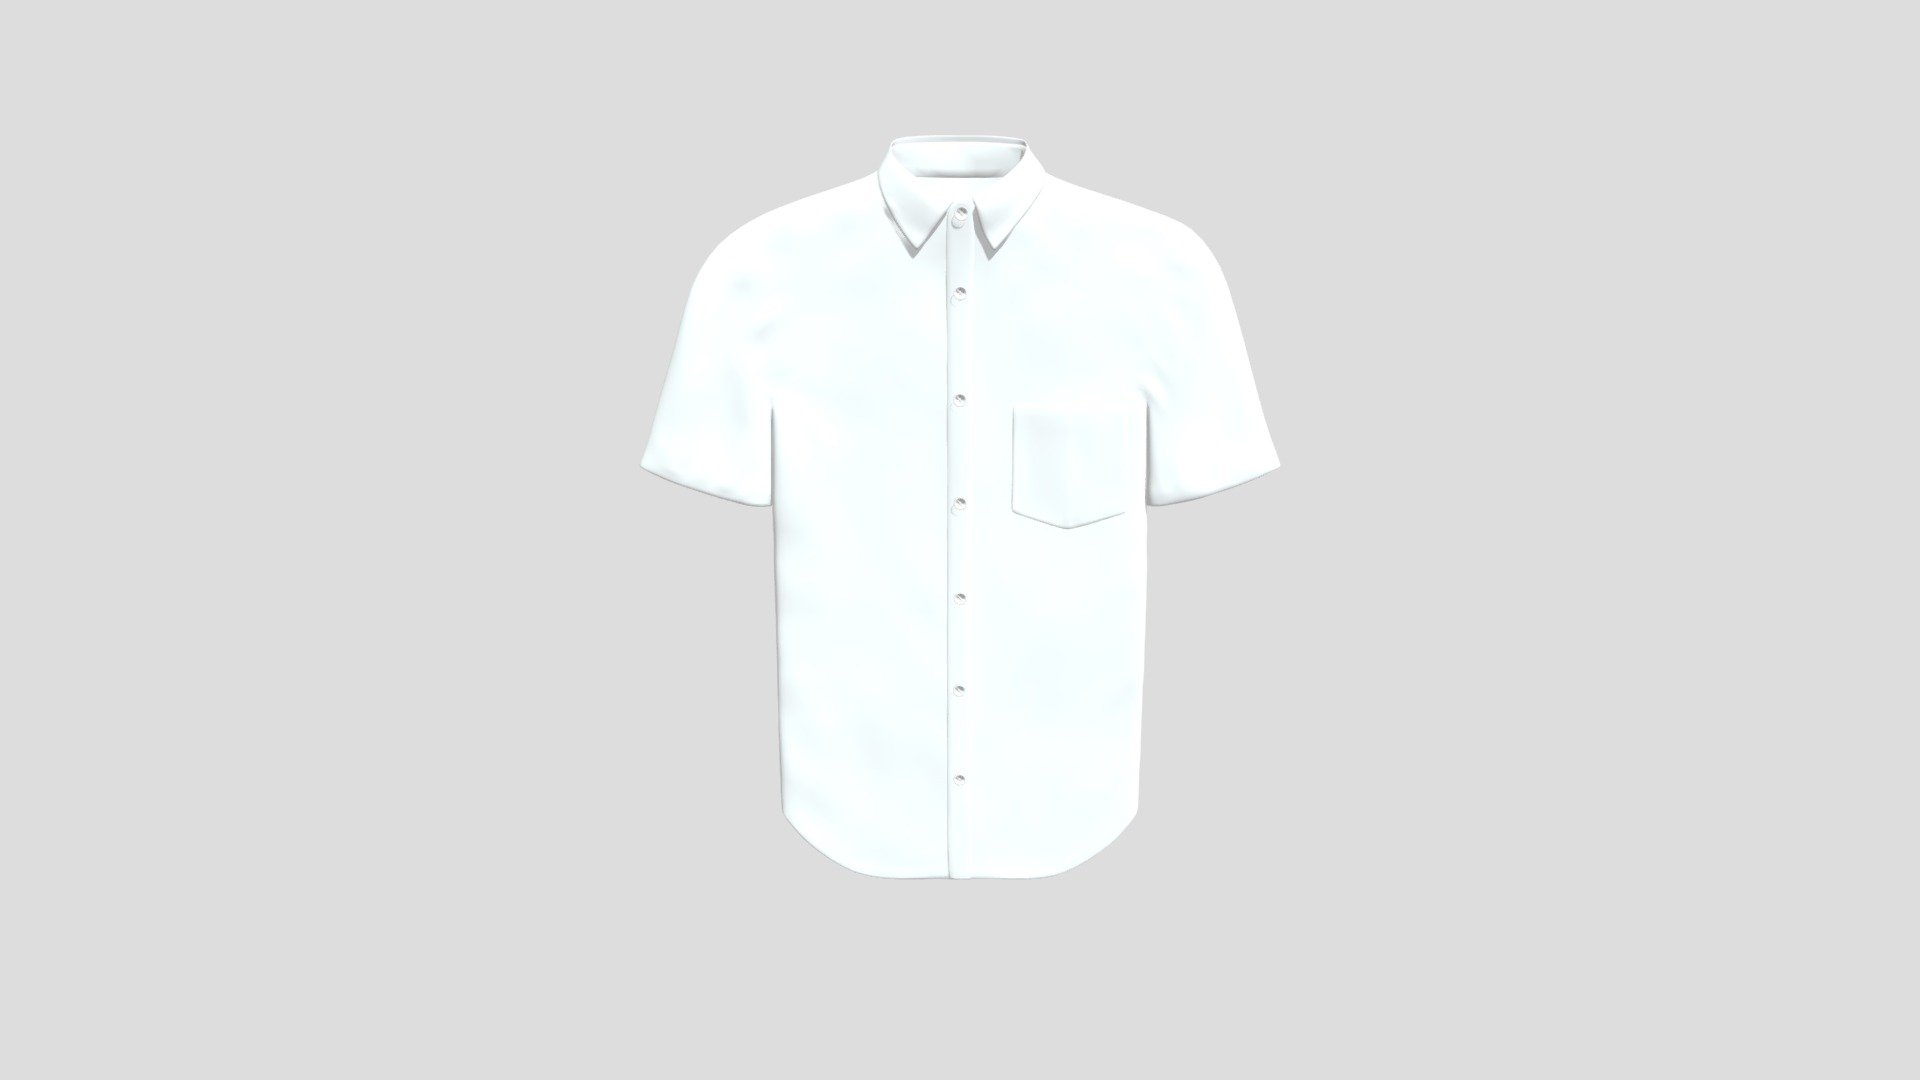 Shirt0923 - 3D model by garlicboy40 [e501347] - Sketchfab